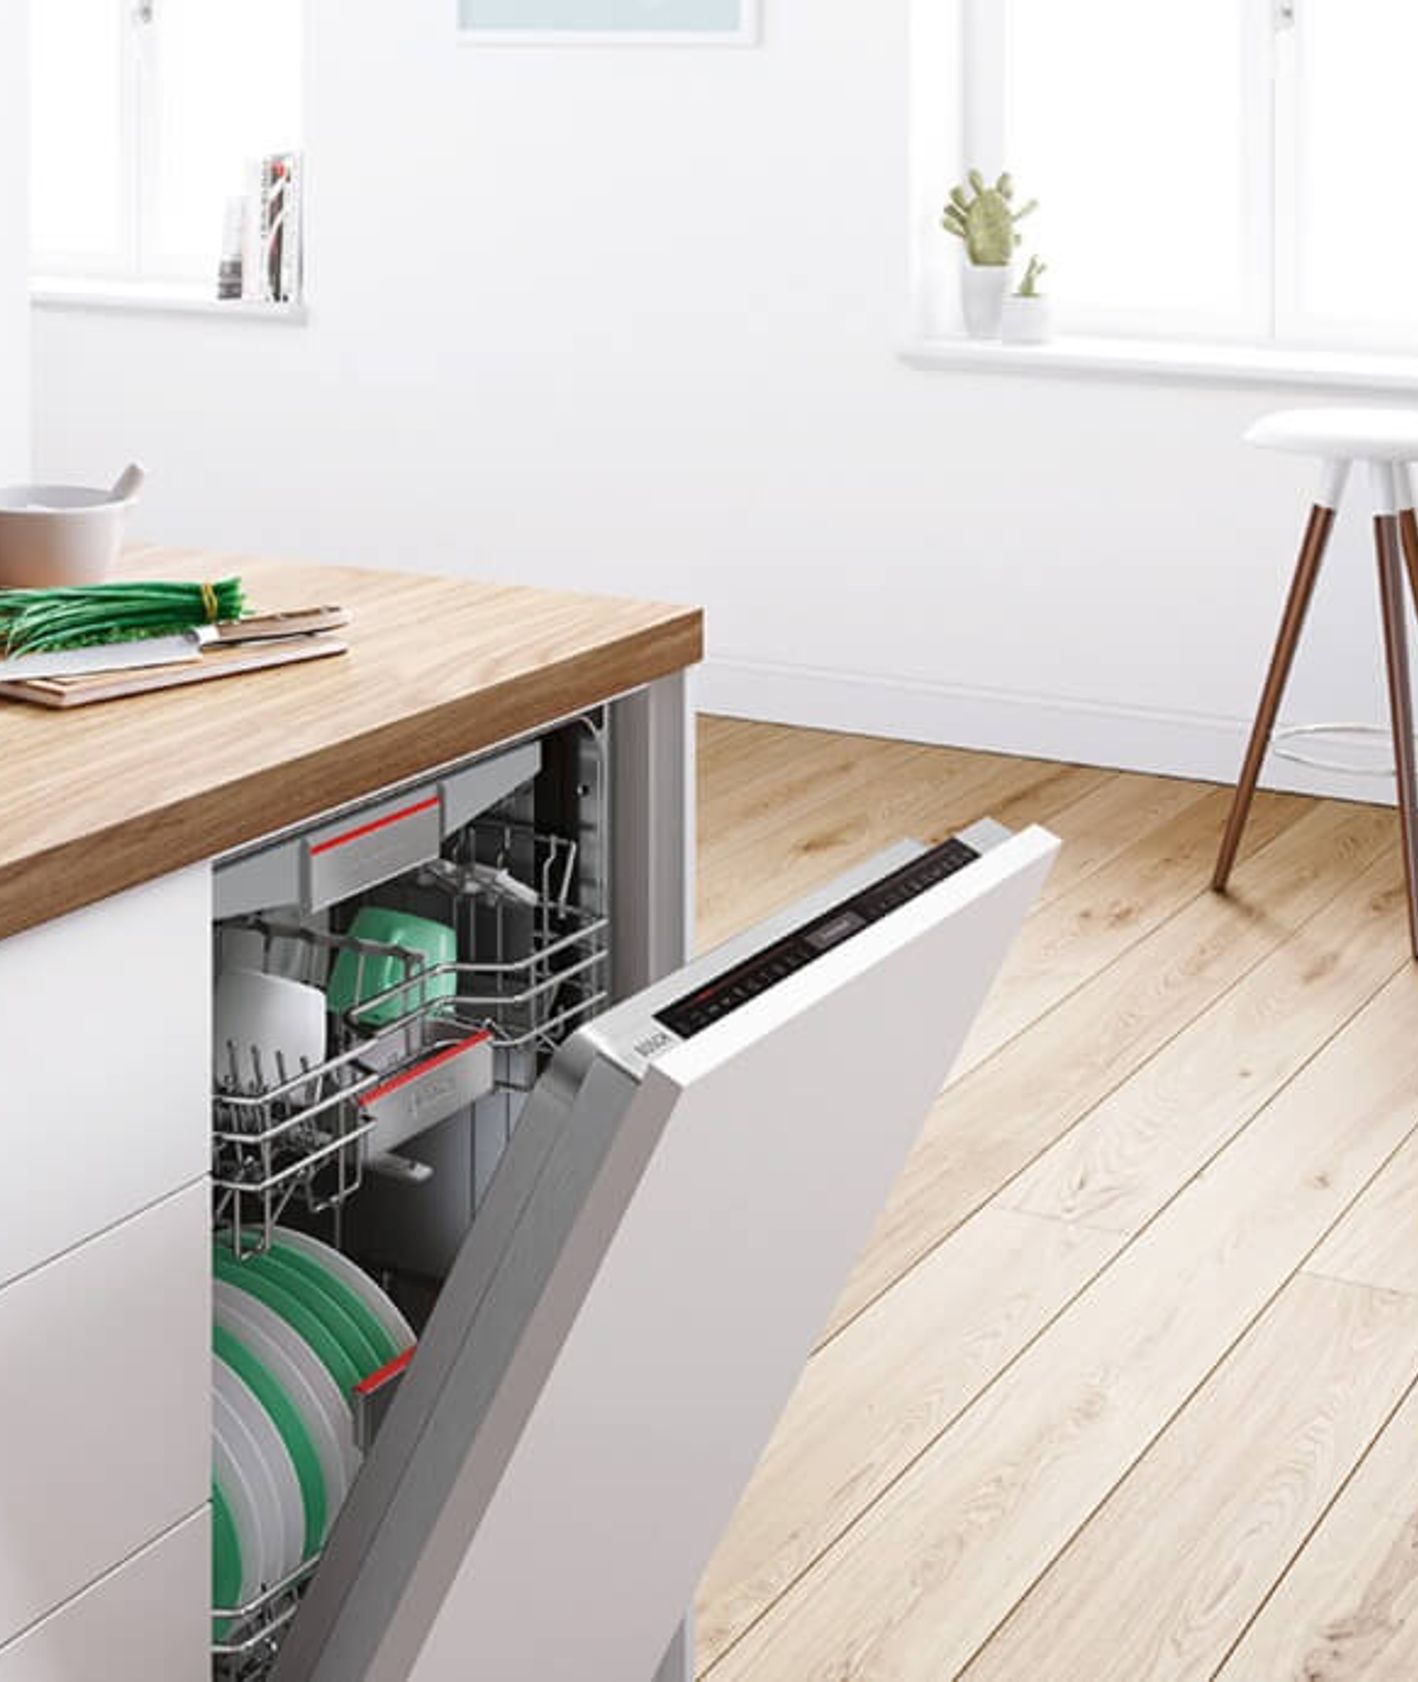 Zmywarka SMV46LX73E marki Bosch w kuchni (fot. materiały prasowe)